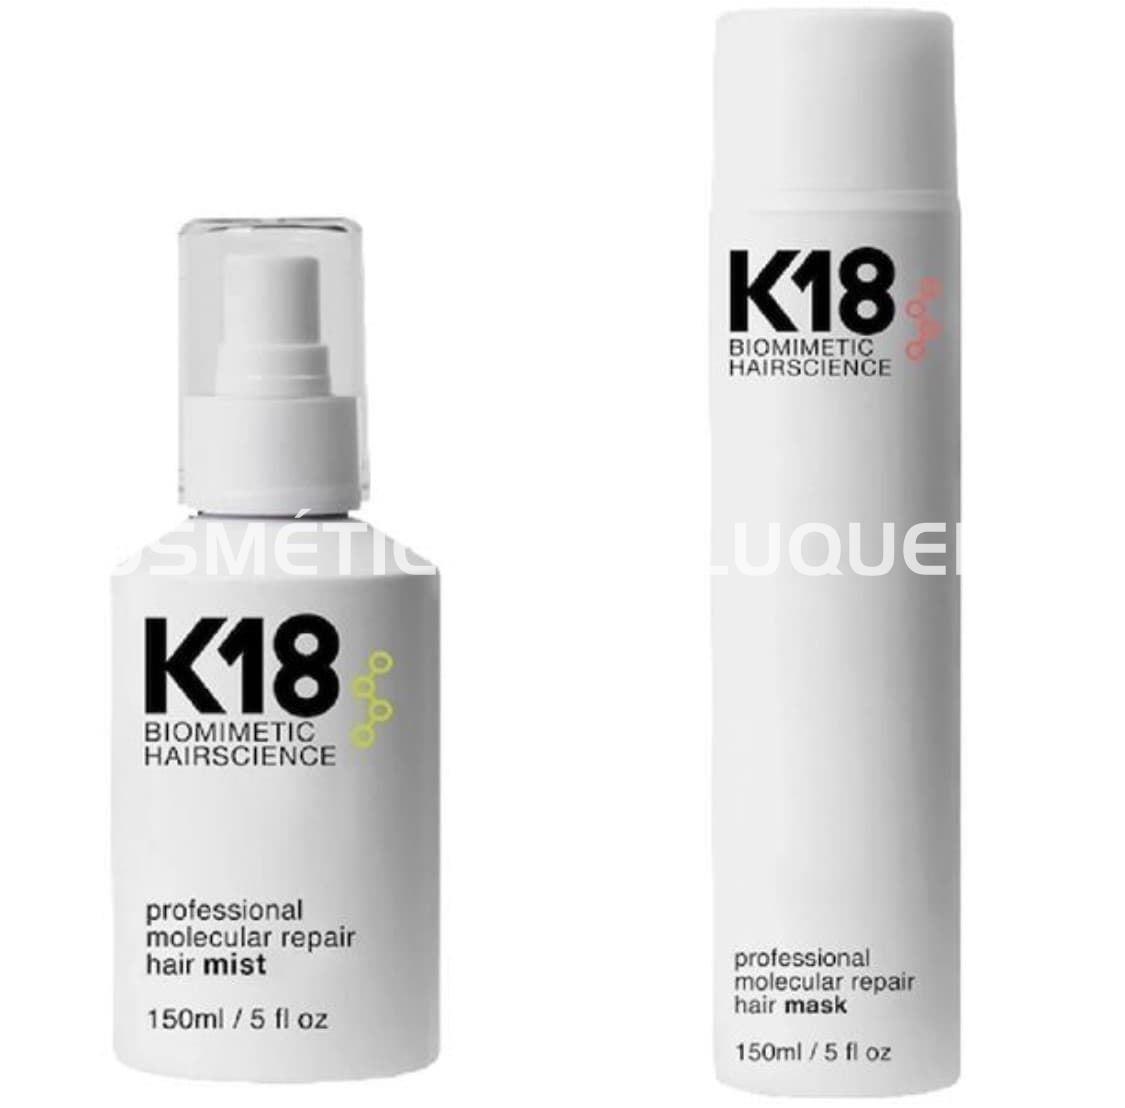 K18 hair pack profesional - Imagen 1